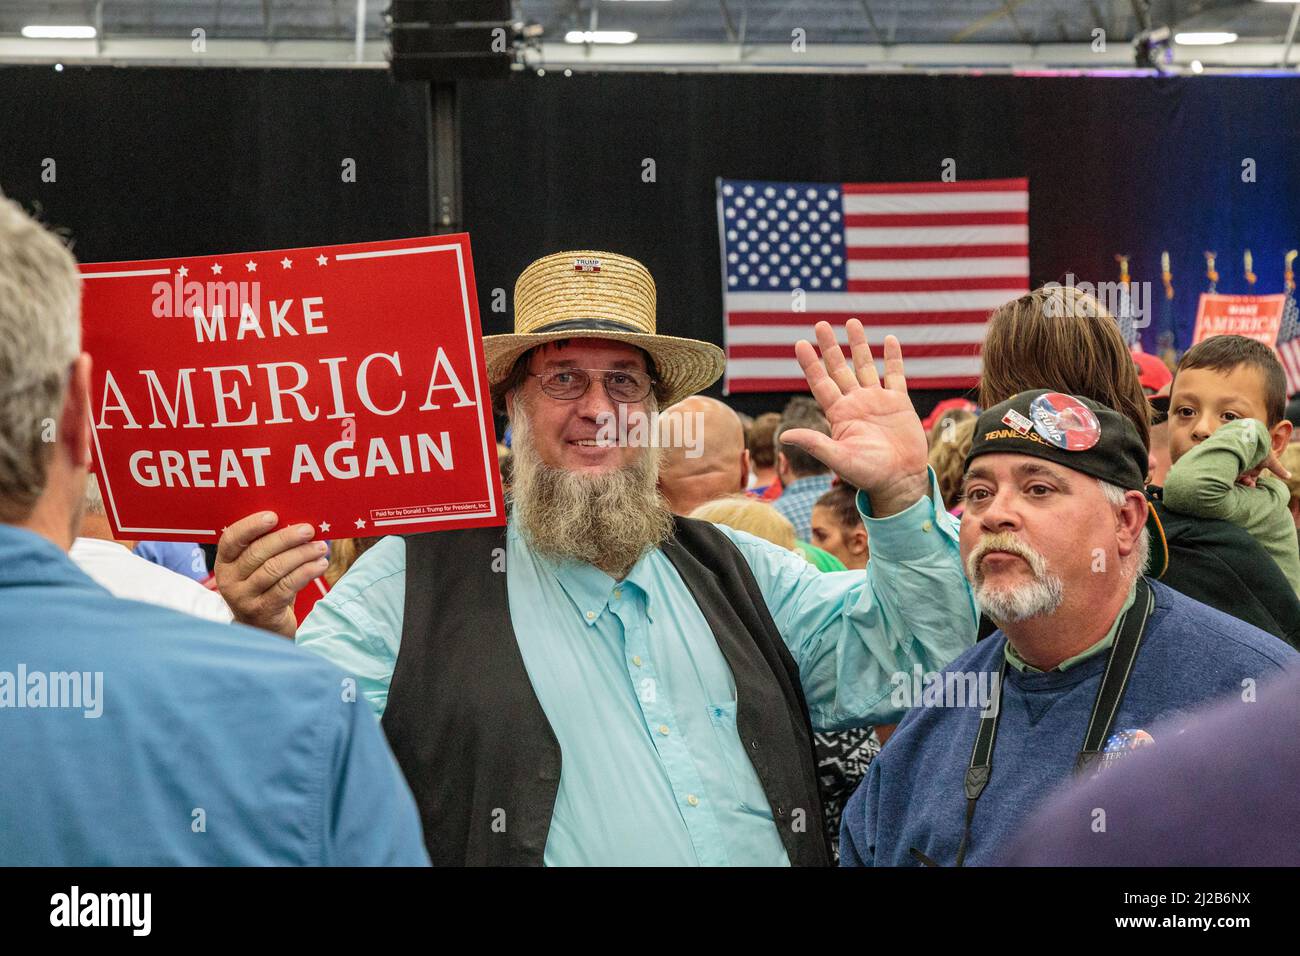 Manheim, PA, USA - 1. Oktober 2016: Ein Amishman in Lancaster County unterstützt begeistert Make America Great Again, indem er ein Schild an einen Donald TR schwenkt Stockfoto